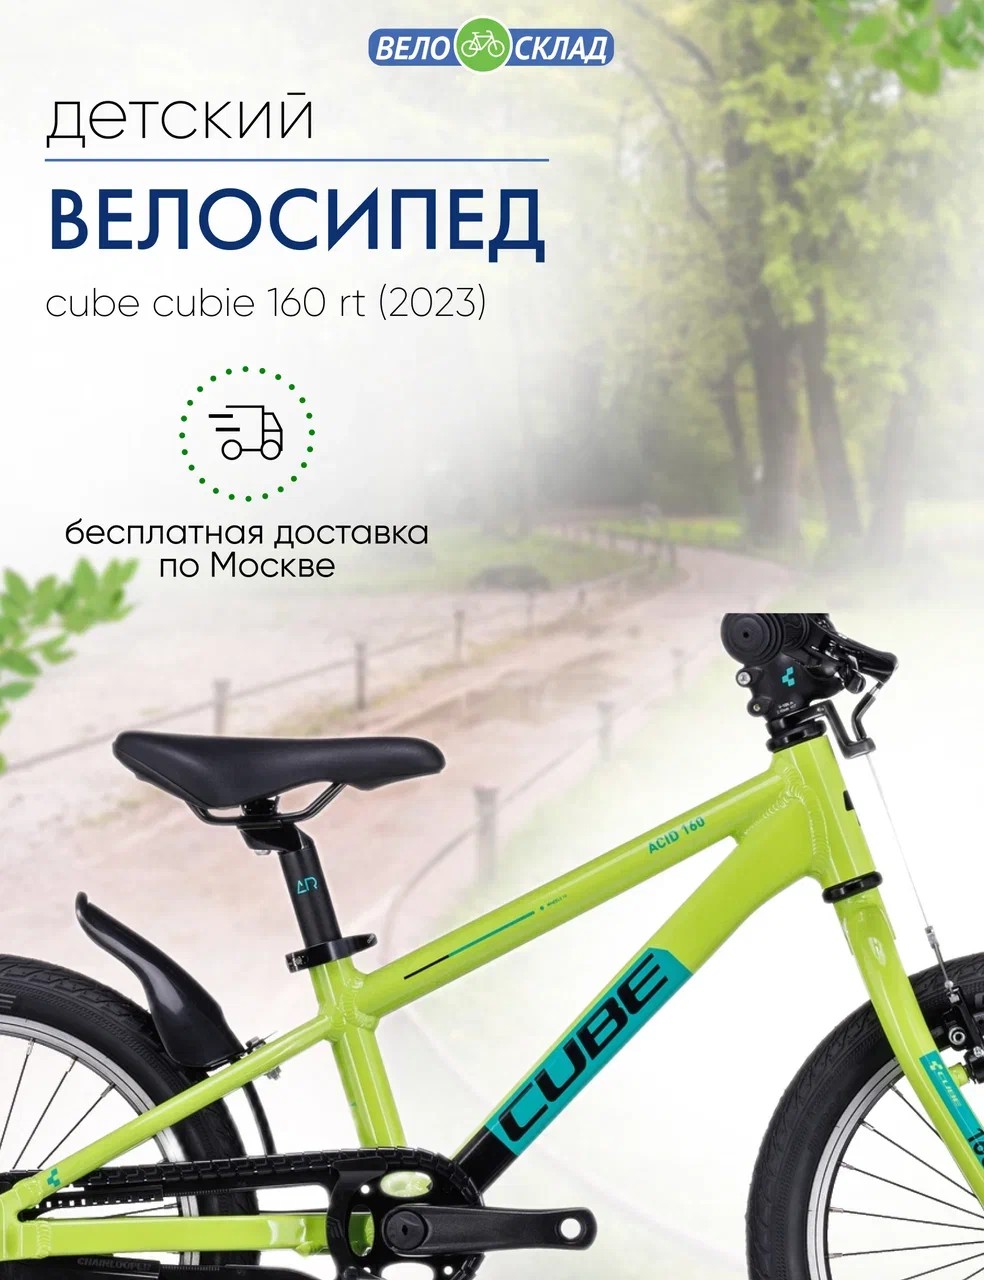 Детский велосипед Cube Cubie 160 RT, год 2023, цвет Зеленый-Черный